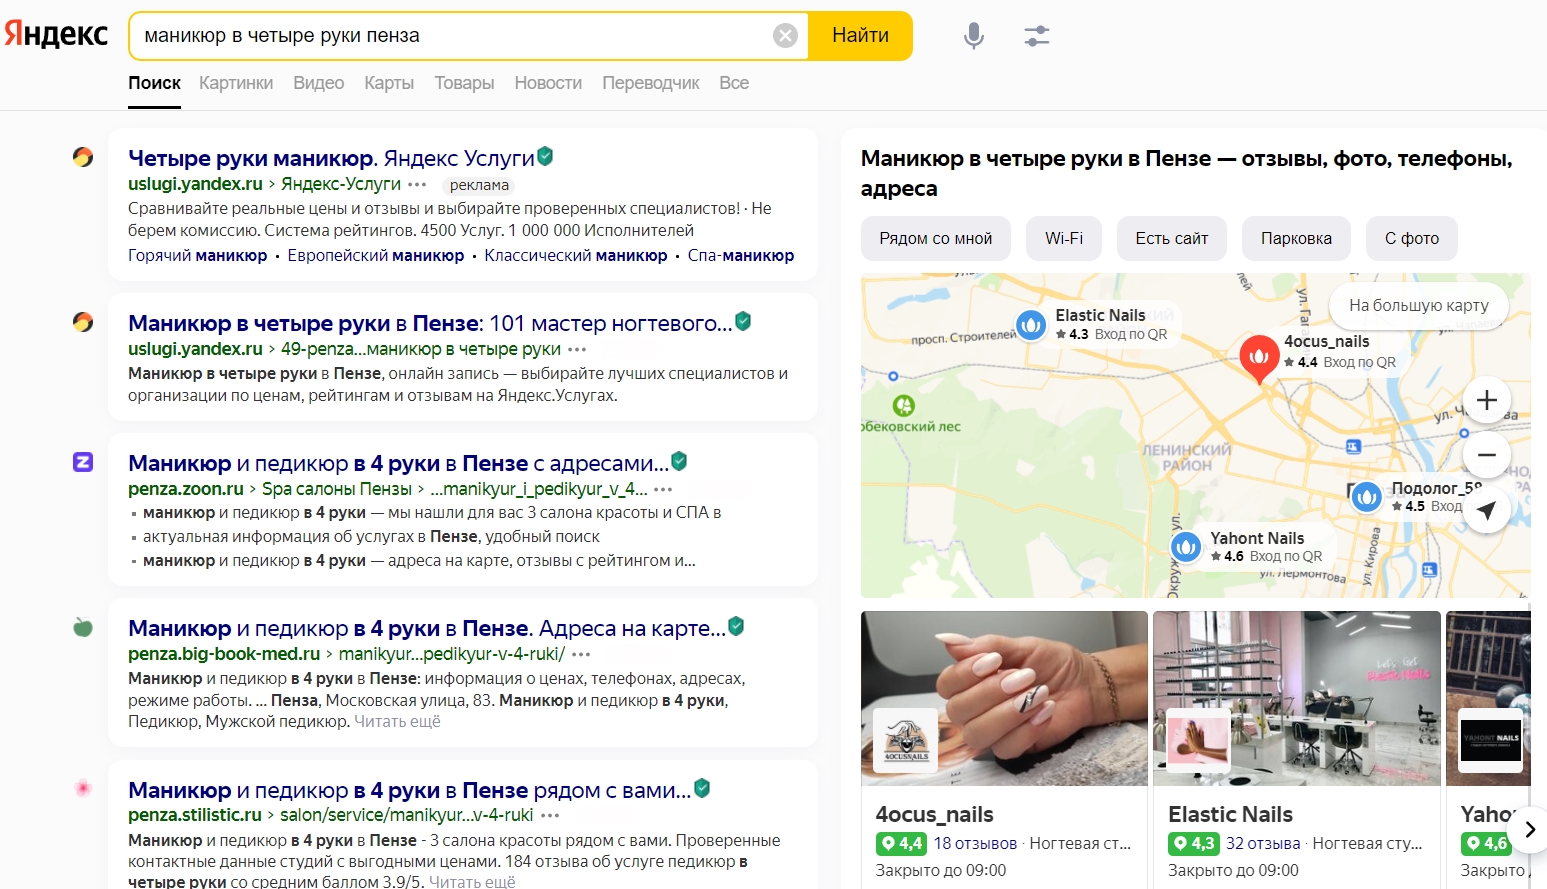 Карта в выдаче Яндекса с карточками компаний